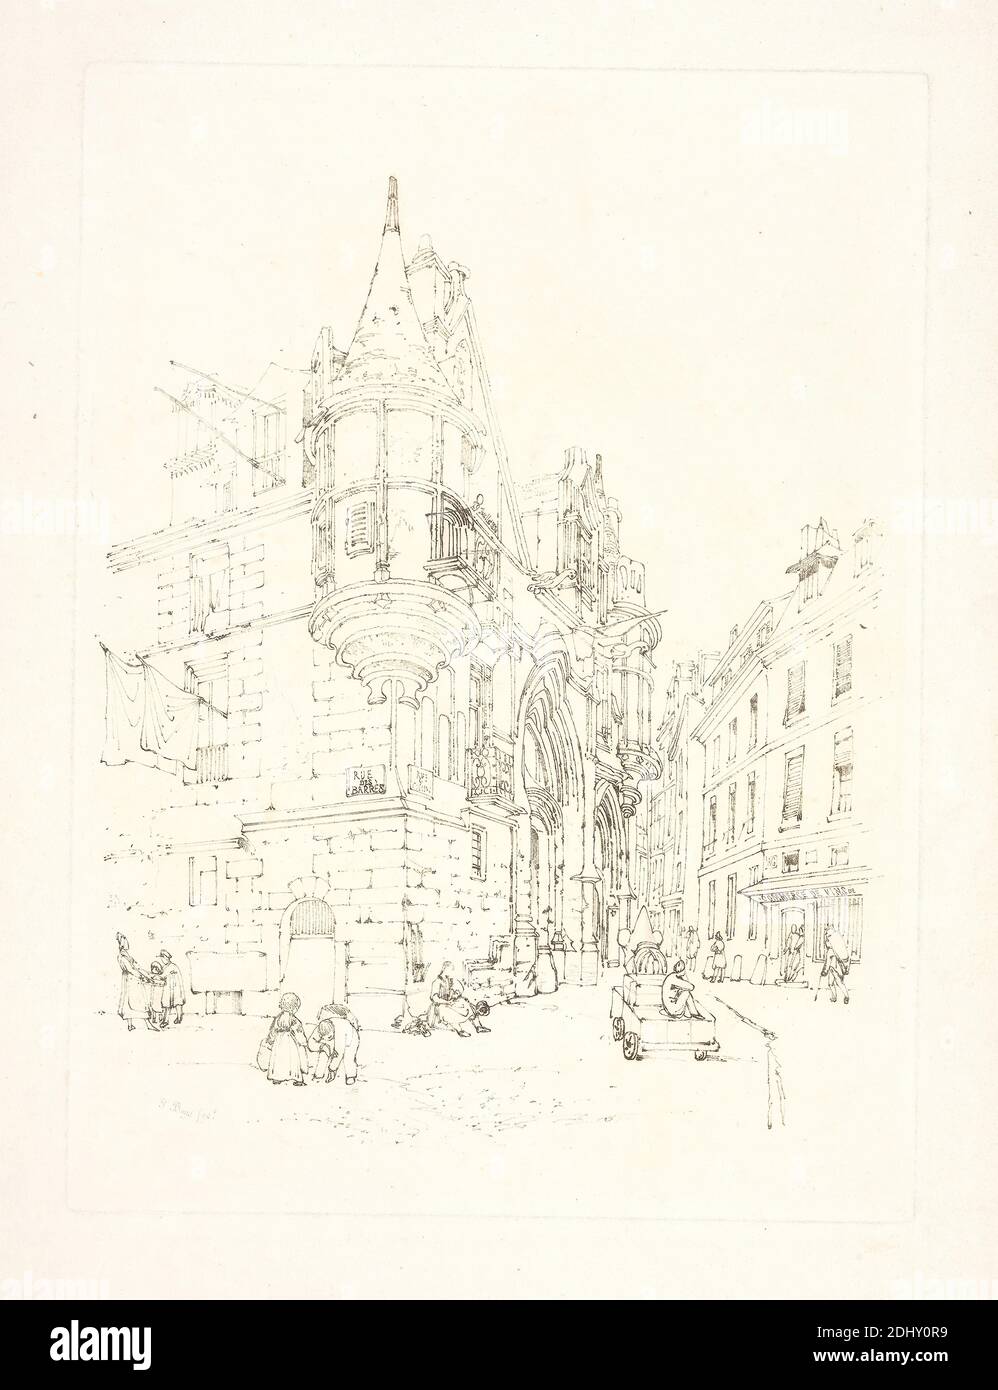 Hôtel de sens, Paris, imprimé par Thomas Shotter Boys, 1803–1874, British, 1830, gravure au sol mou sur papier à colombe crème modérément épais, feuille: 19 1/2 x 13 1/8 pouces (49.5 x 33.3 cm), plaque: 12 1/2 x 9 3/16 pouces (31.7 x 23.3 cm), et image: 10 9/16 x 8 9/16 pouces (26.8 x 21.8 cm), tabliers, arches, sujet architectural, automobile, sacs (conteneurs), balcons, bonnets (chapeaux), bâtiments, casquettes (articles de chapellerie), transport, enfants, ville, paysage urbain, colonnes (éléments architecturaux), costume, portes, robes, figures, drapeaux, Grand Tour, chapeaux, travail, hommes, mère, palais Banque D'Images